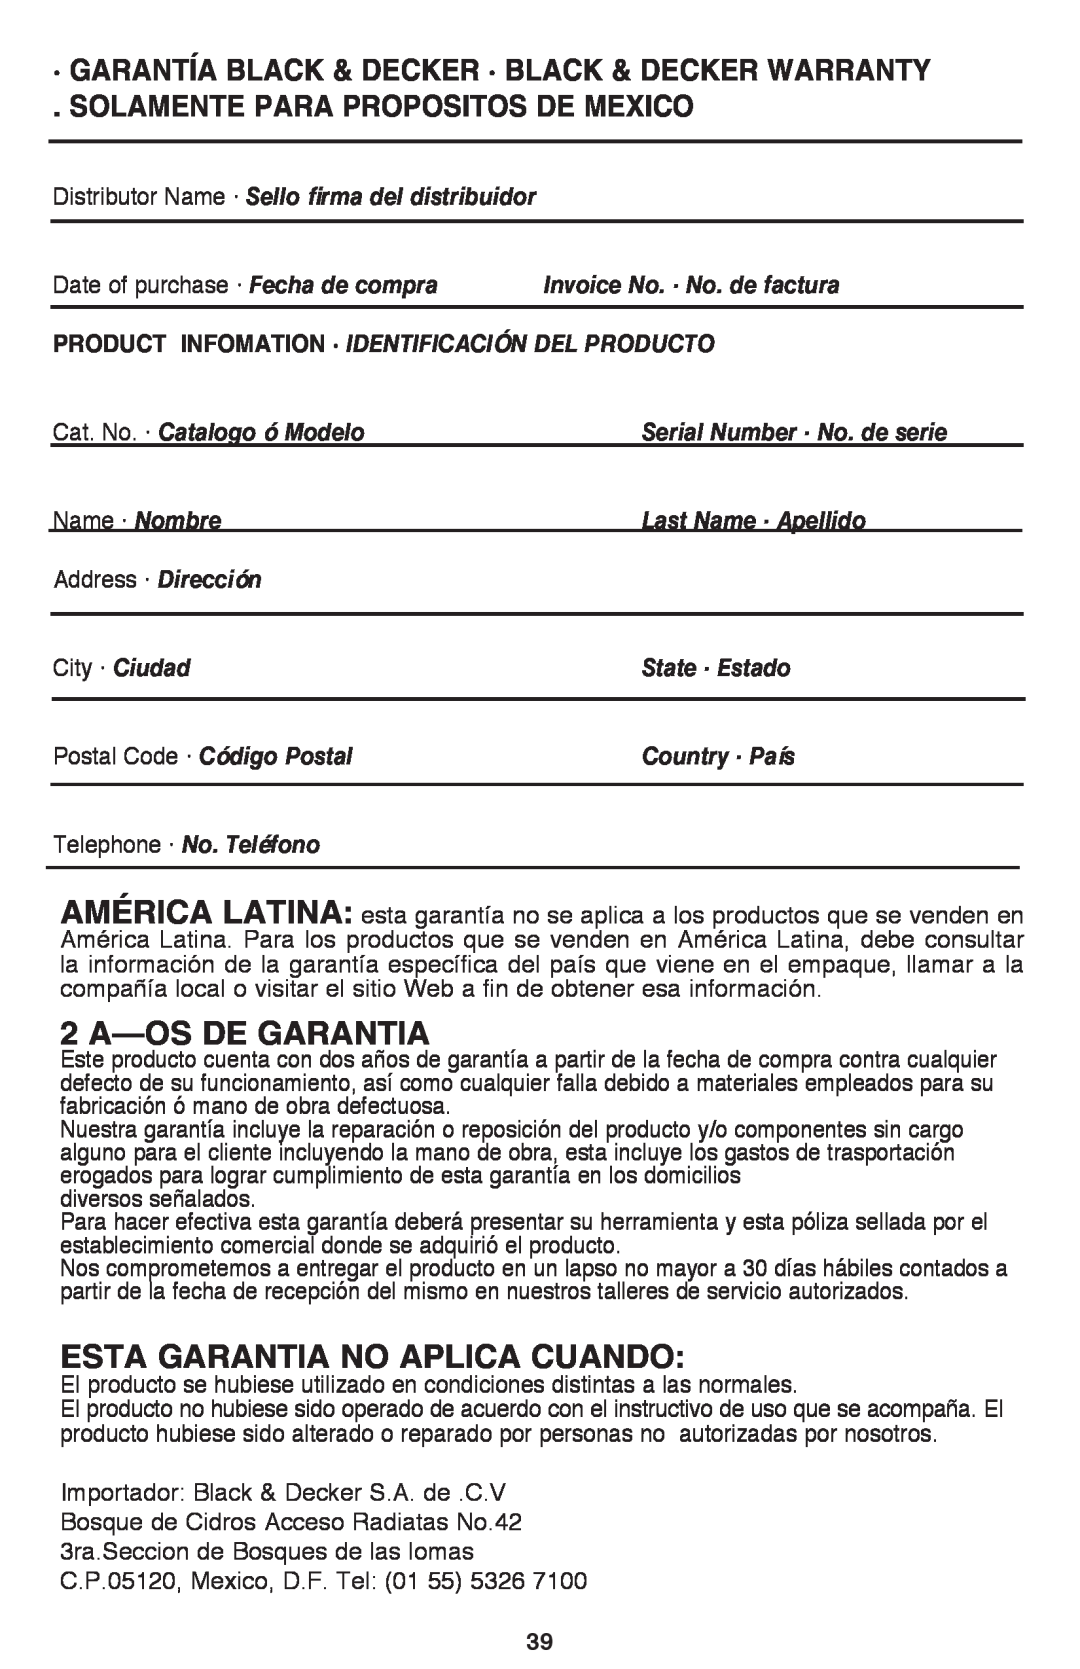 Black & Decker BDCF12, BDCF20 manual 2 A—OSDE GARANTIA, Esta Garantia No Aplica Cuando, Solamente Para Propositos De Mexico 